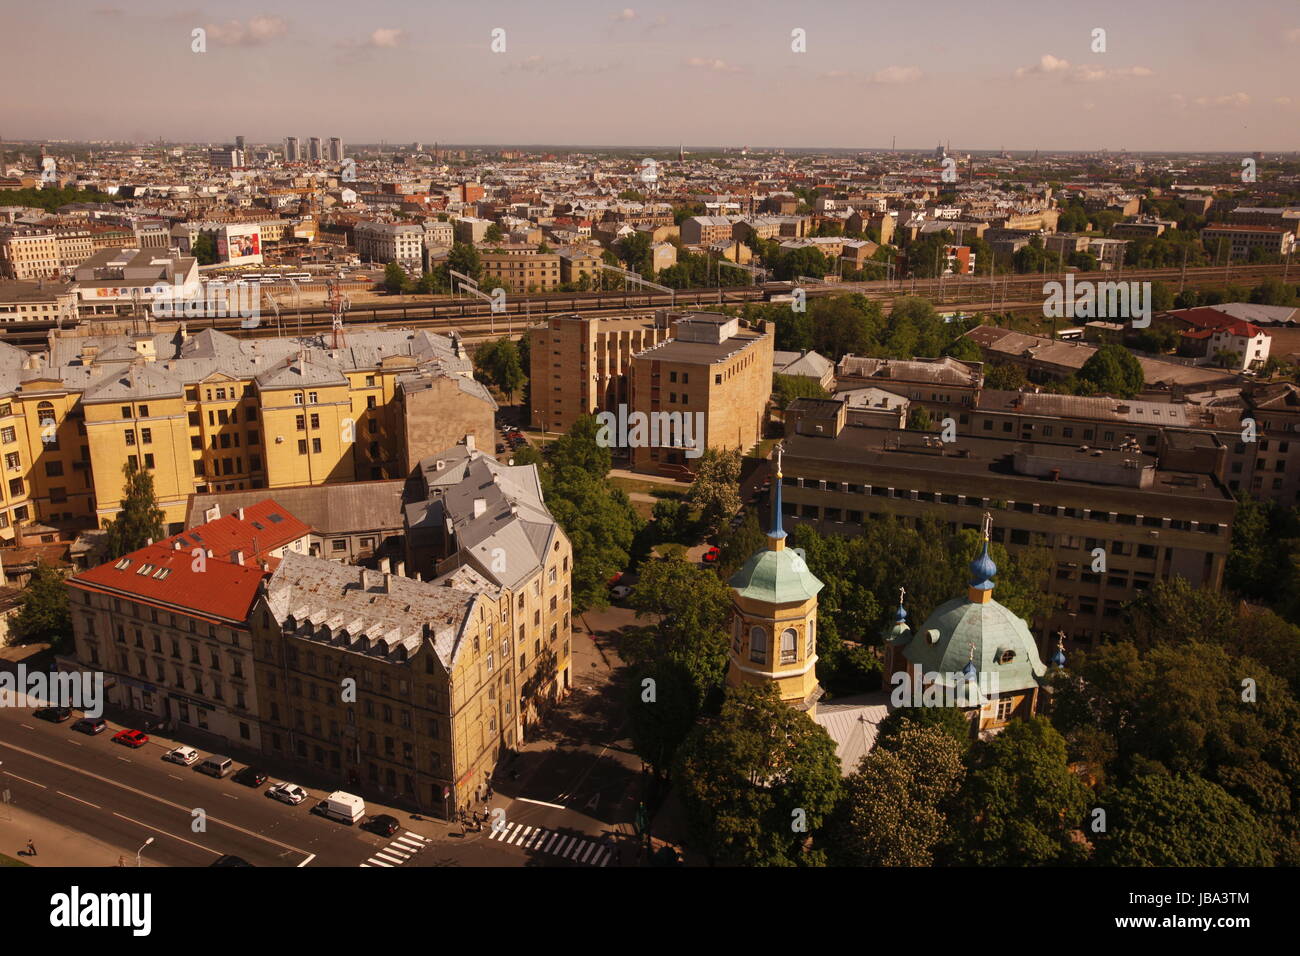 Die Neustadt von Riga aus Sicht der Aussichtsterasse des Sozialistischen Hochhaus Akademie der Wissenschaften im Stadtteil Little Moskow in Riga, Lettland Stock Photo